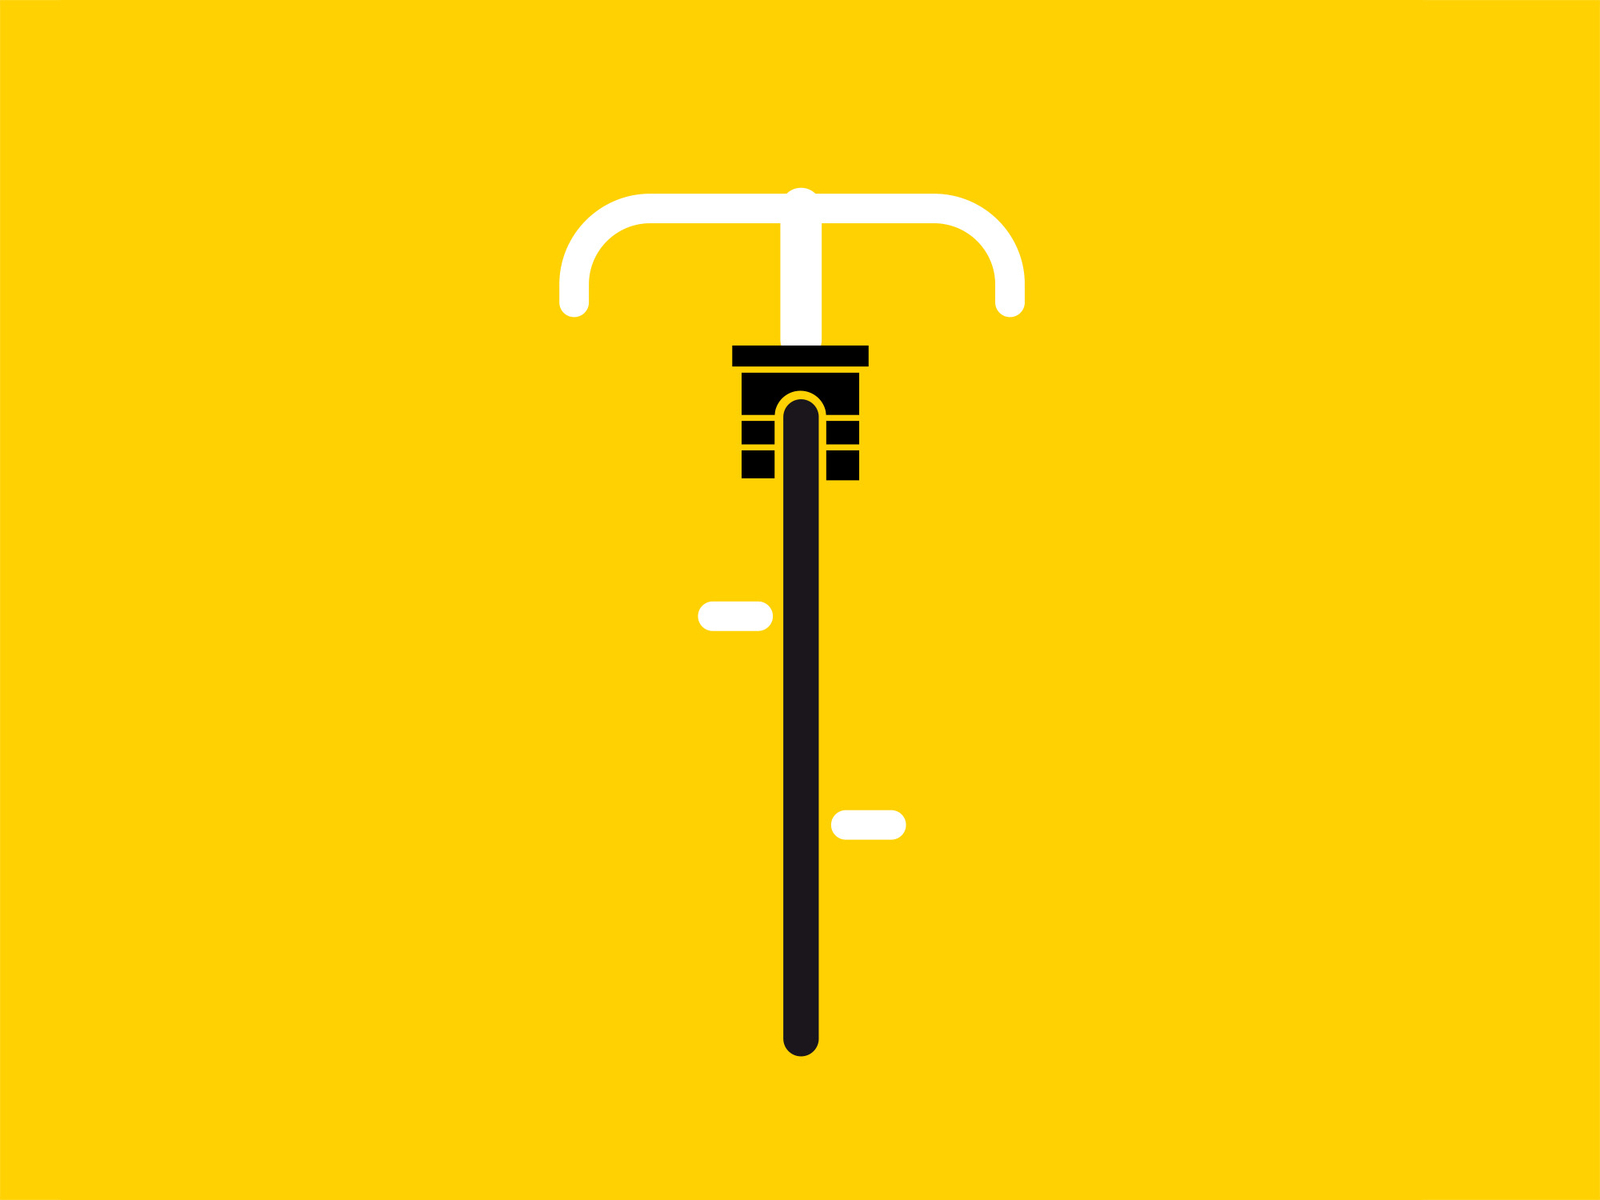 Tour de France champs-élysées cyclism cyclist france illustration minimalist paris tour de france